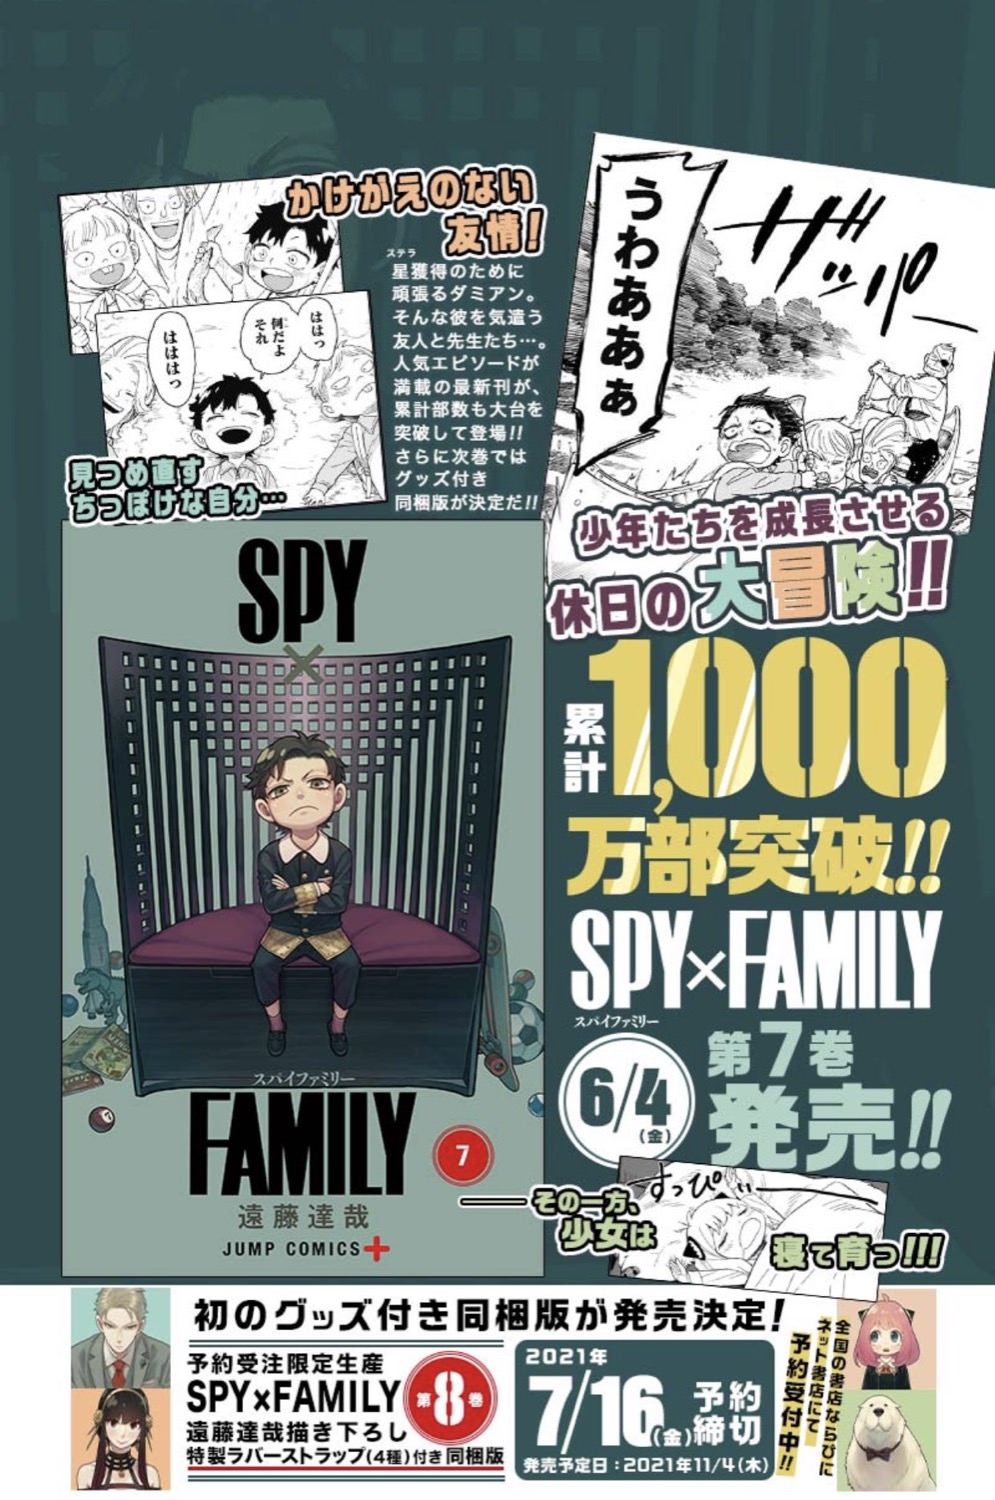 遠藤達哉「SPY×FAMILY」6月4日発売の7巻で早くも1000万部突破!